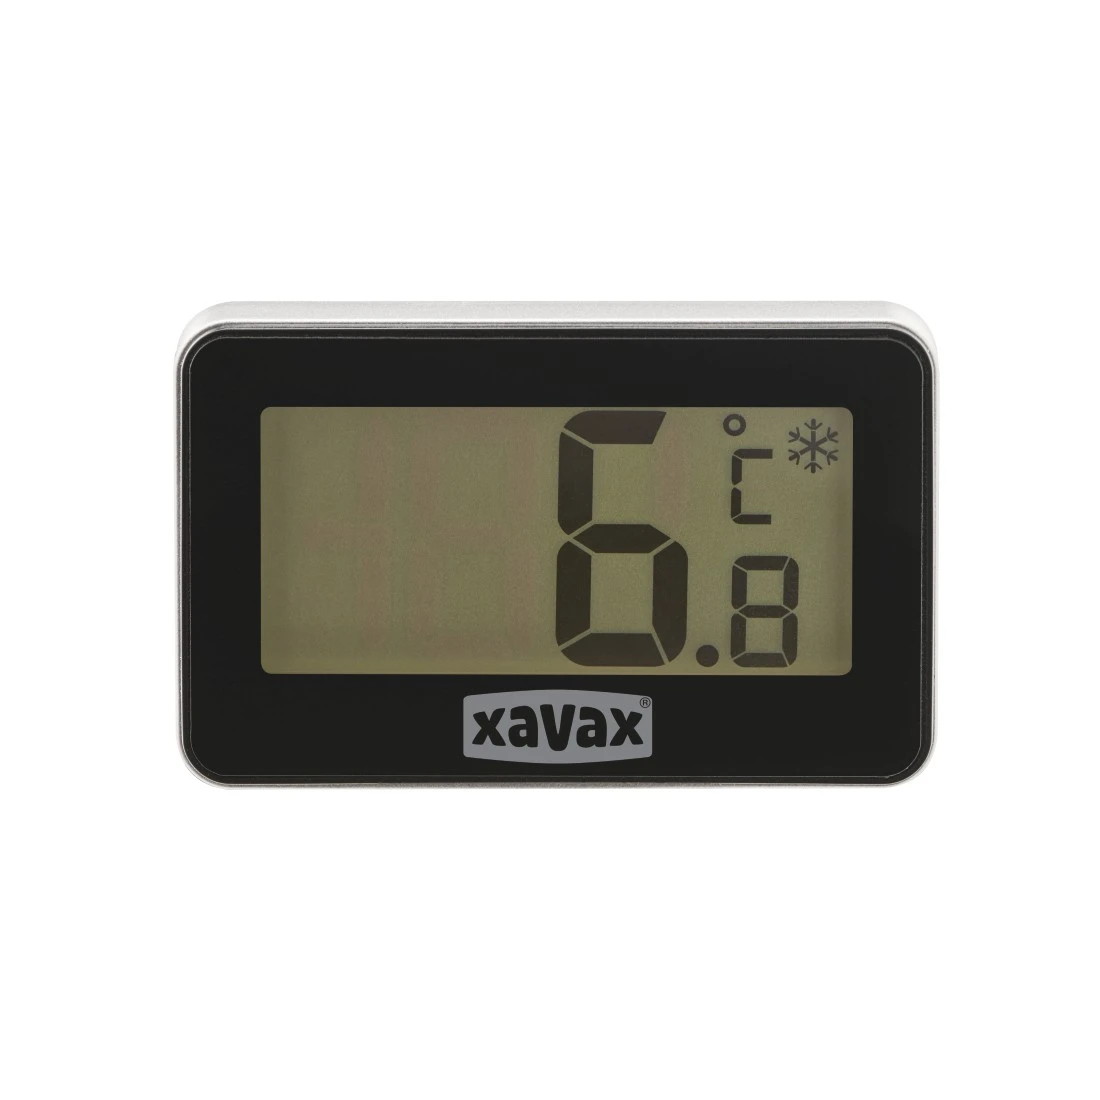 abx Druckfähige Abbildung - Xavax, Digitales Thermometer für Kühlschrank, Gefrierschrank u. Kühltruhe, Schwarz